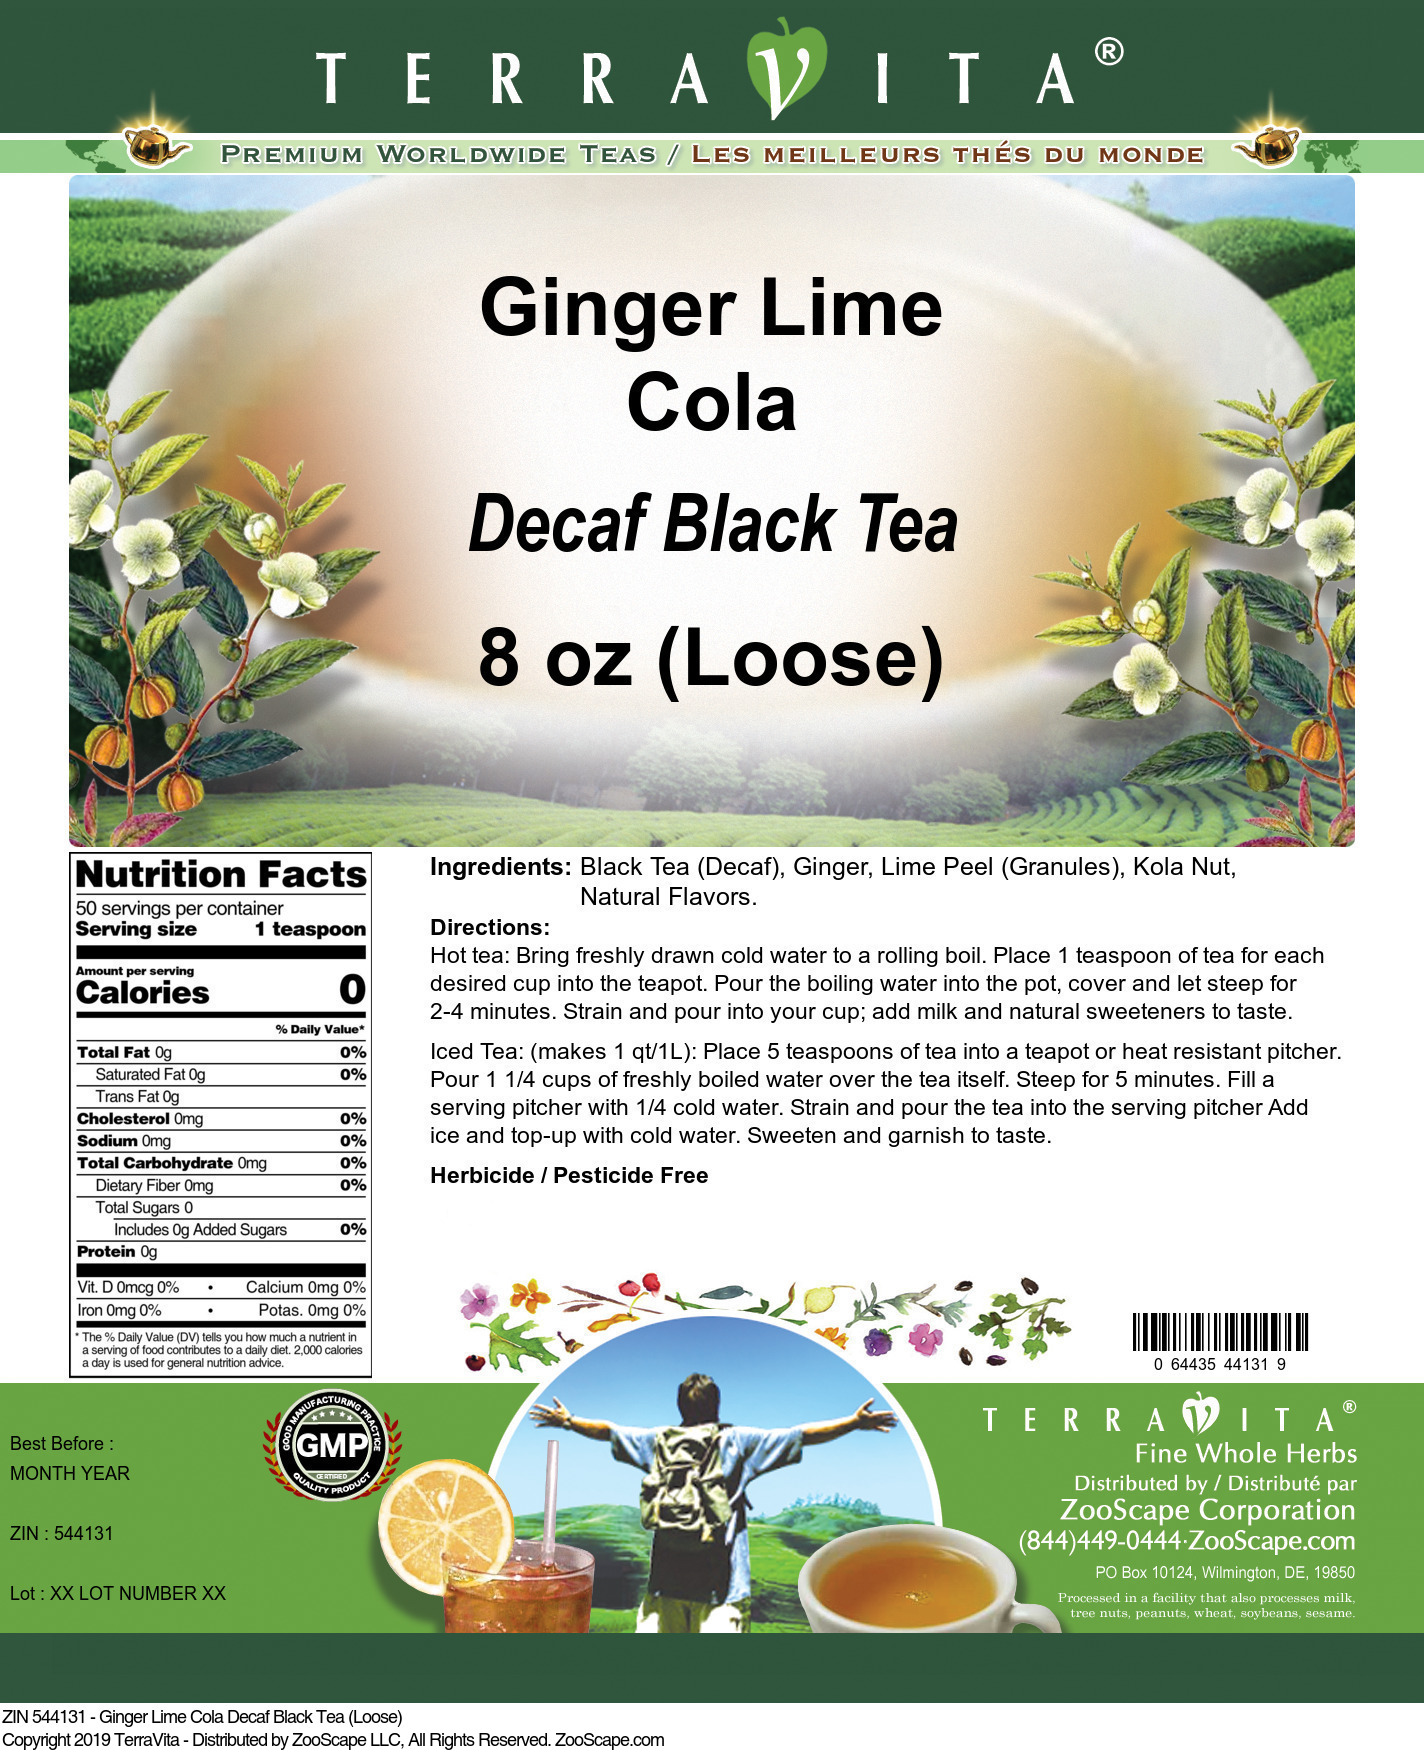 Ginger Lime Cola Decaf Black Tea (Loose) - Label